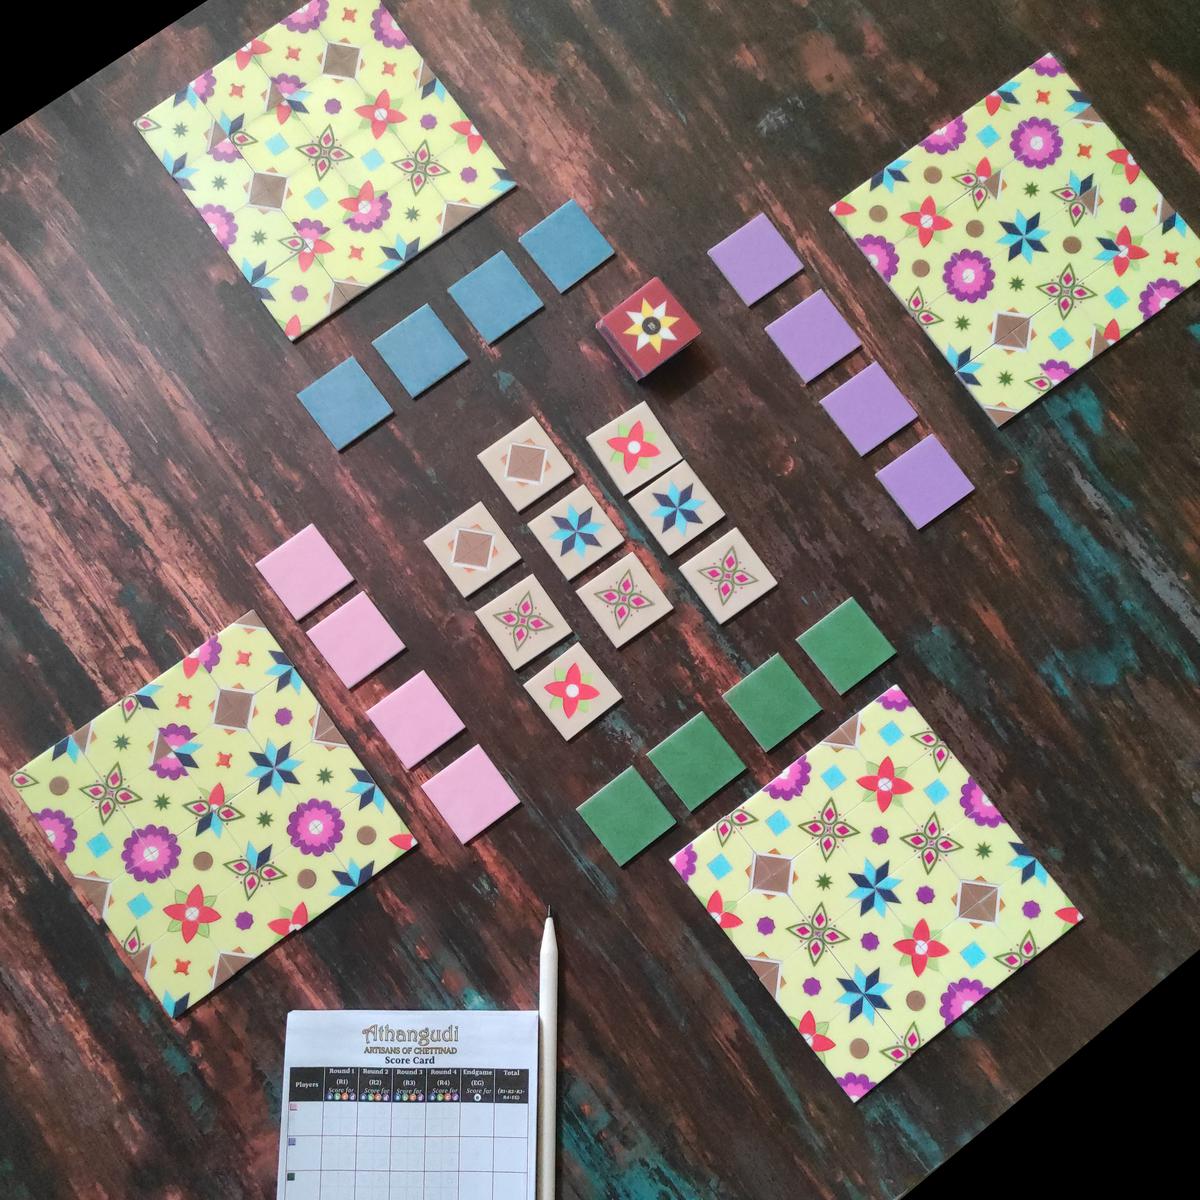 A board game by XOtoXO Games